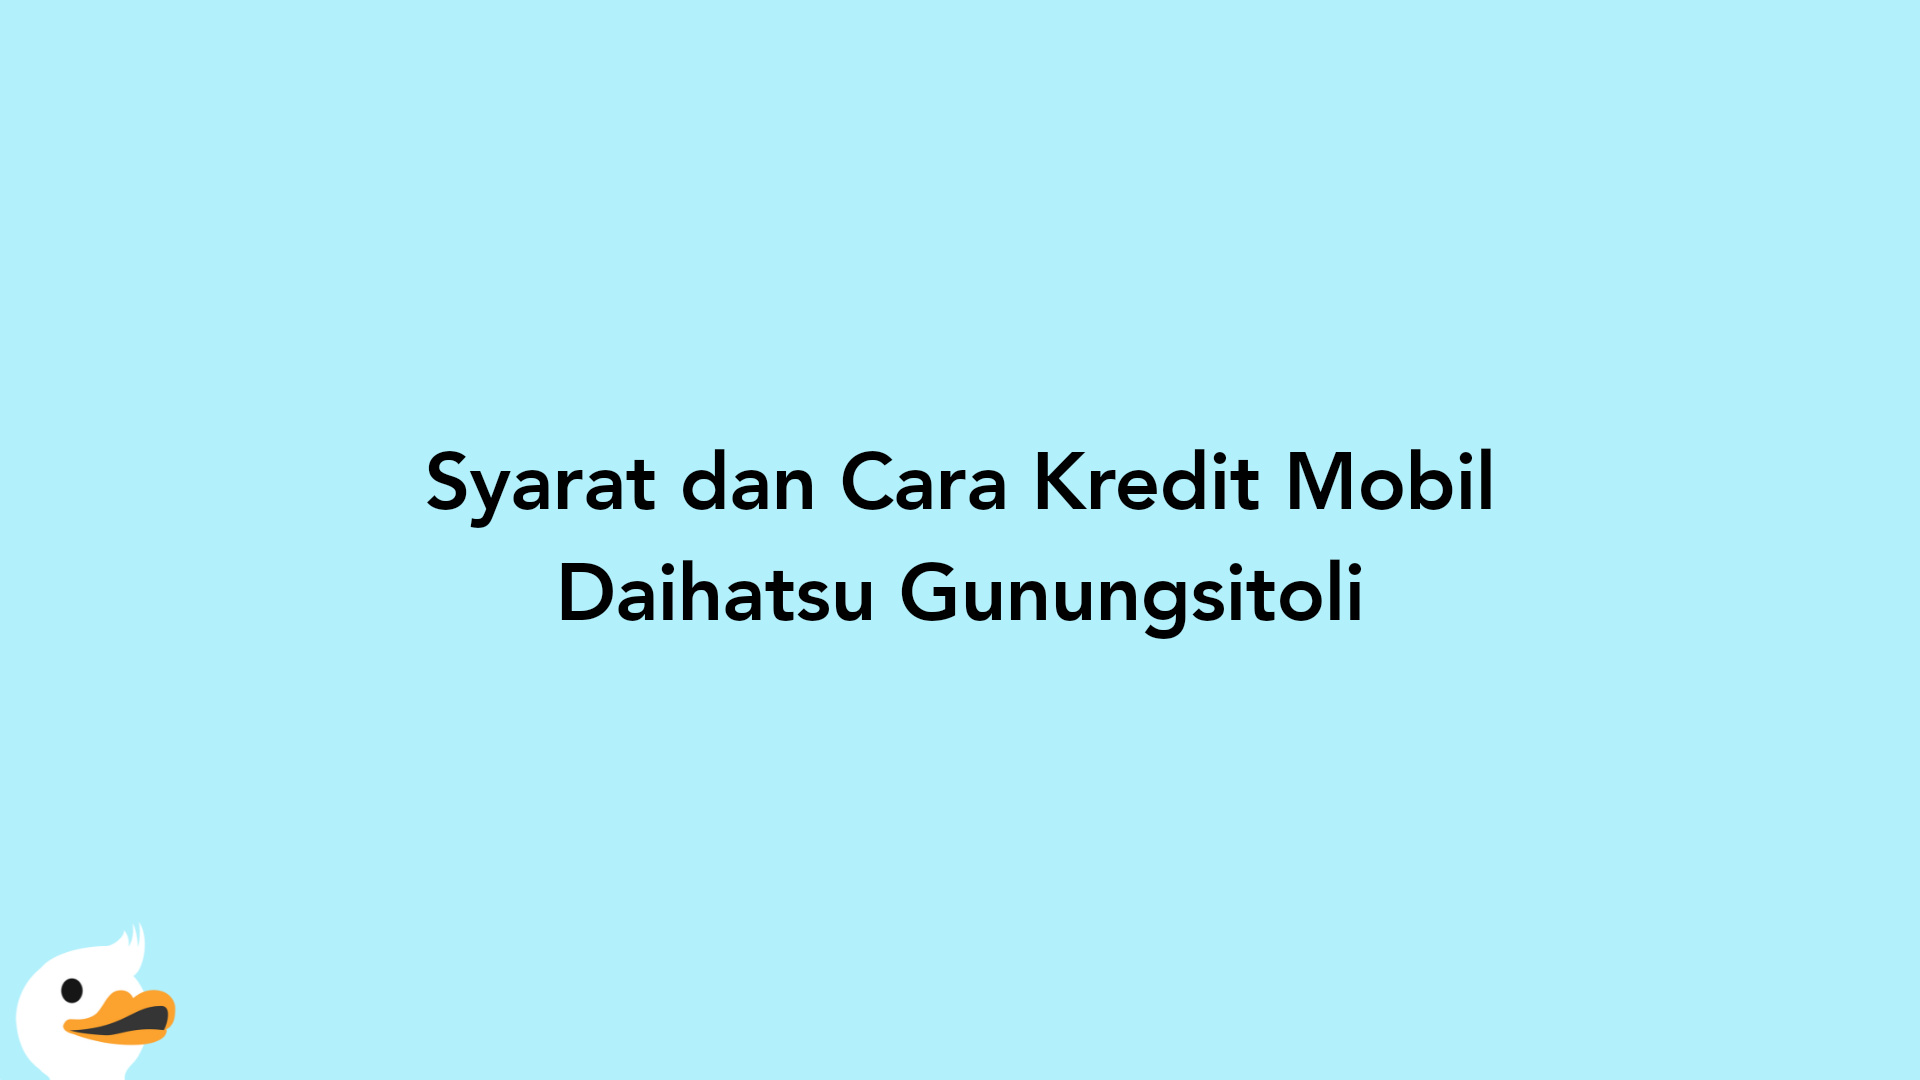 Syarat dan Cara Kredit Mobil Daihatsu Gunungsitoli